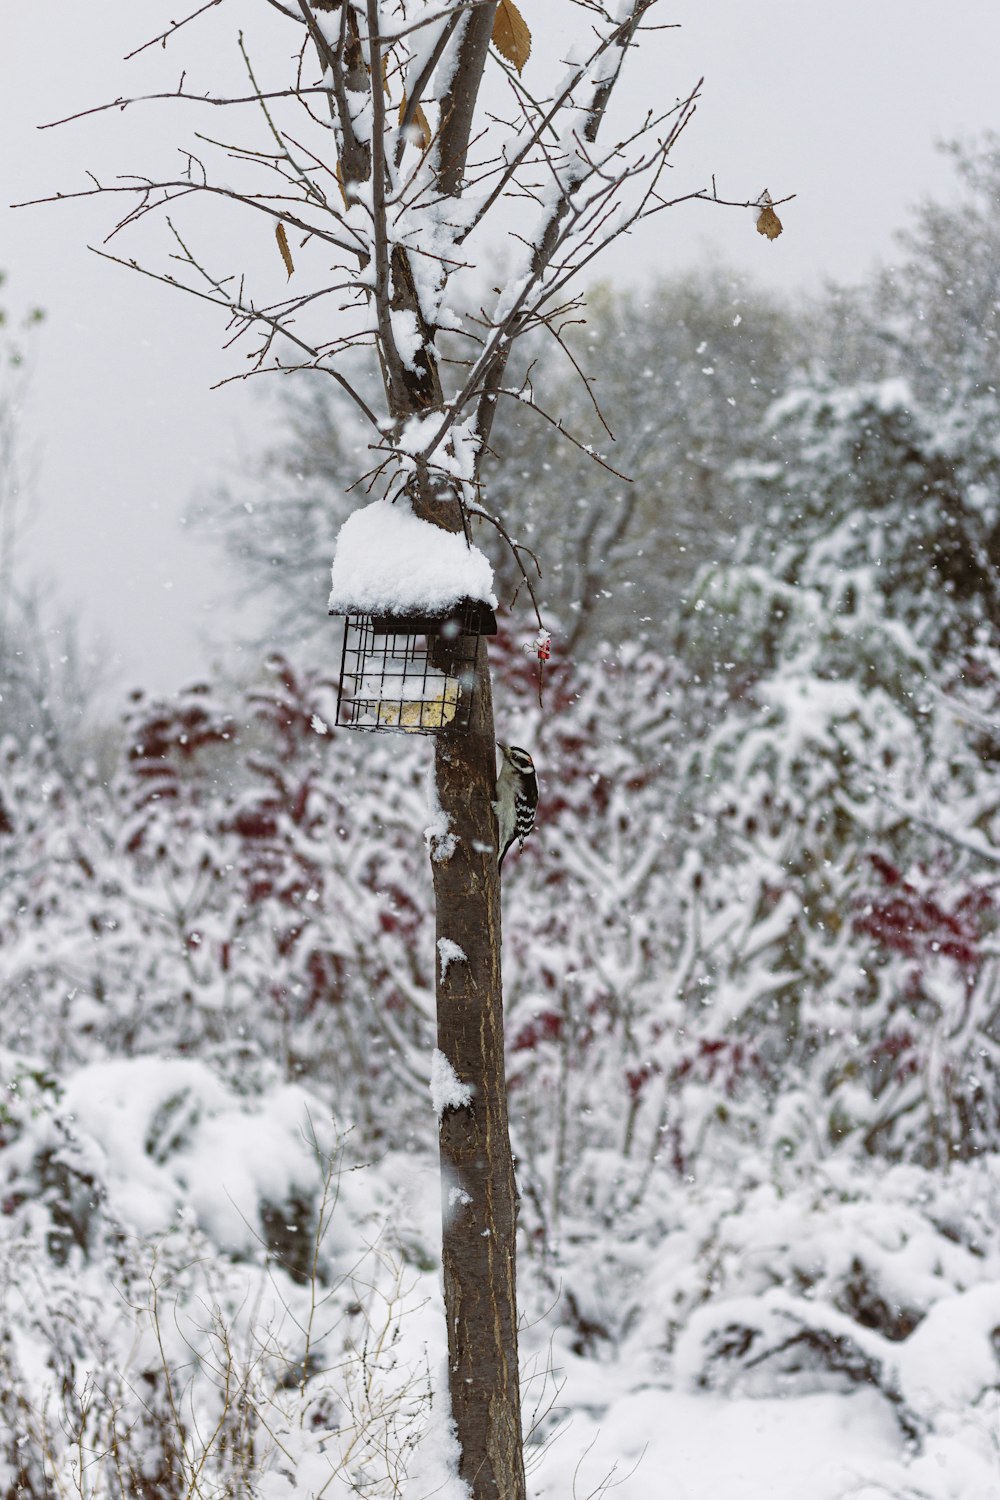 gabbia per uccelli bianca e nera sul ramo marrone dell'albero durante il giorno